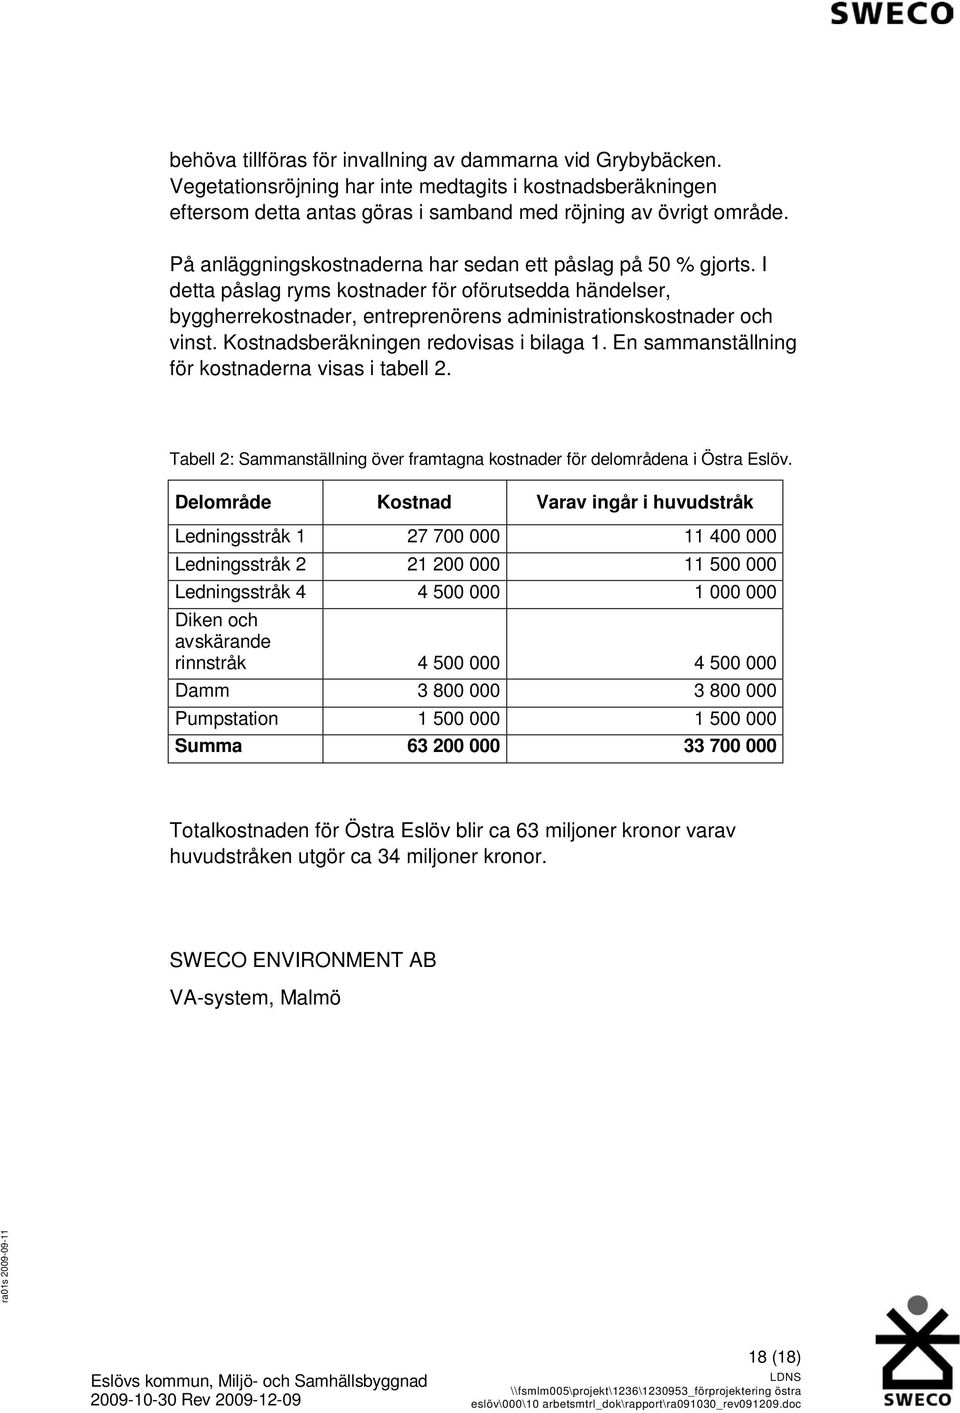 Kostnadsberäkningen redovisas i bilaga 1. En sammanställning för kostnaderna visas i tabell 2. Tabell 2: Sammanställning över framtagna kostnader för delområdena i Östra Eslöv.